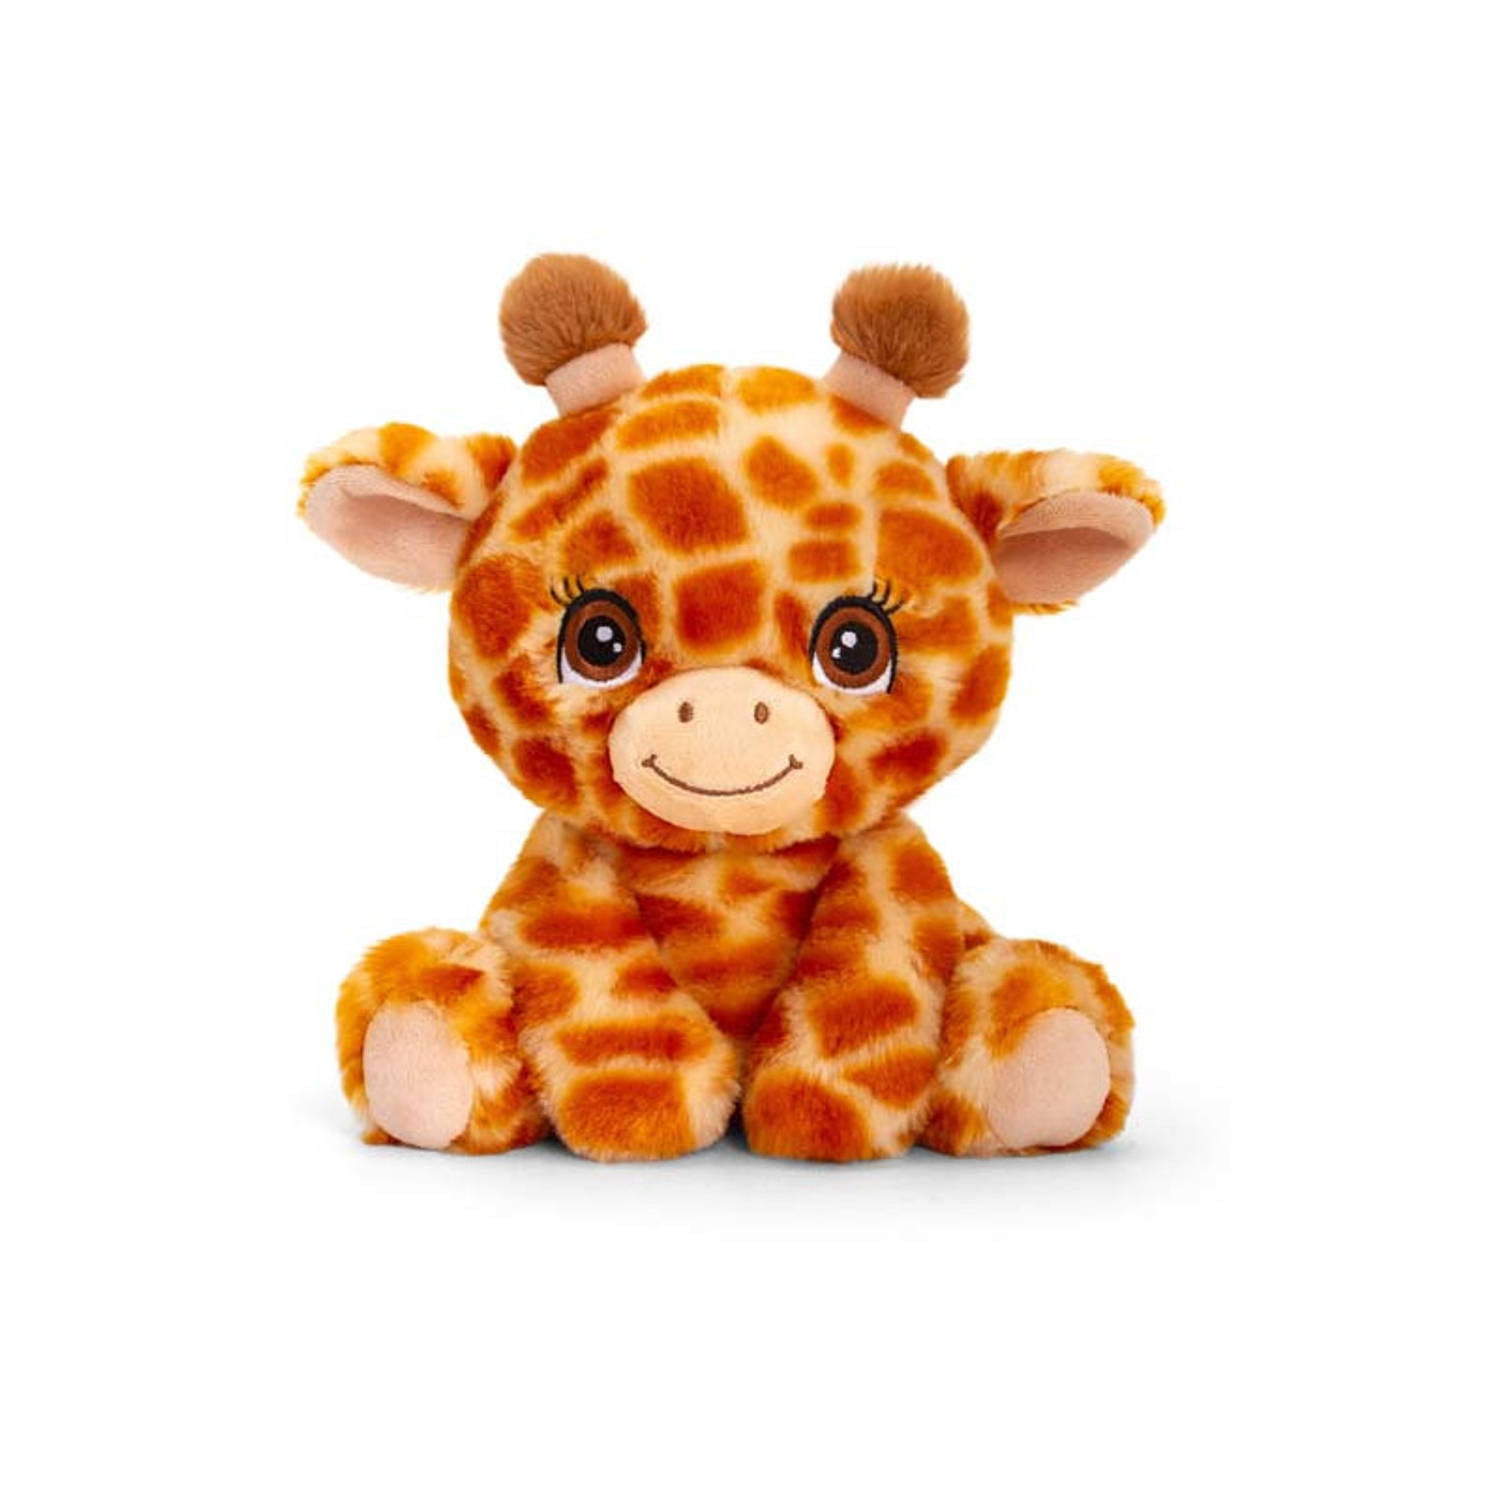 Pluche knuffel dieren giraffe 25 cm - Knuffelbeesten speelgoed